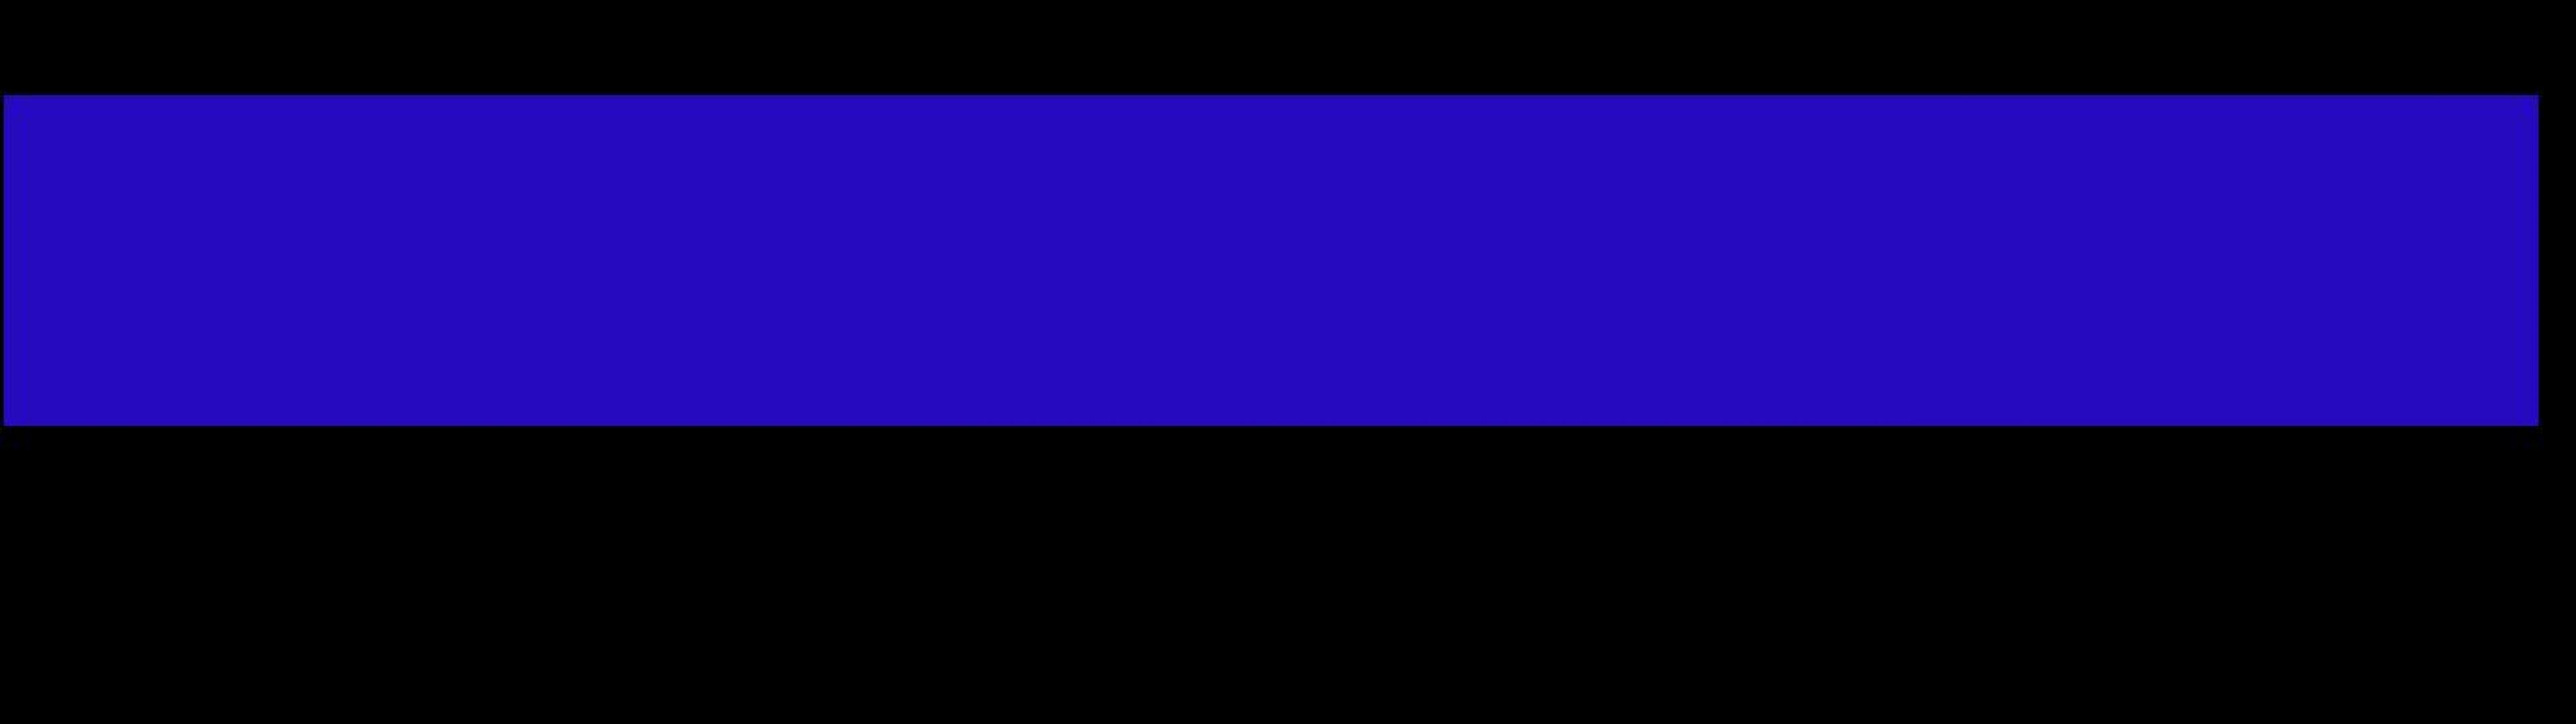 blue line law enforcement backgrounds le themed plix 3840x1080